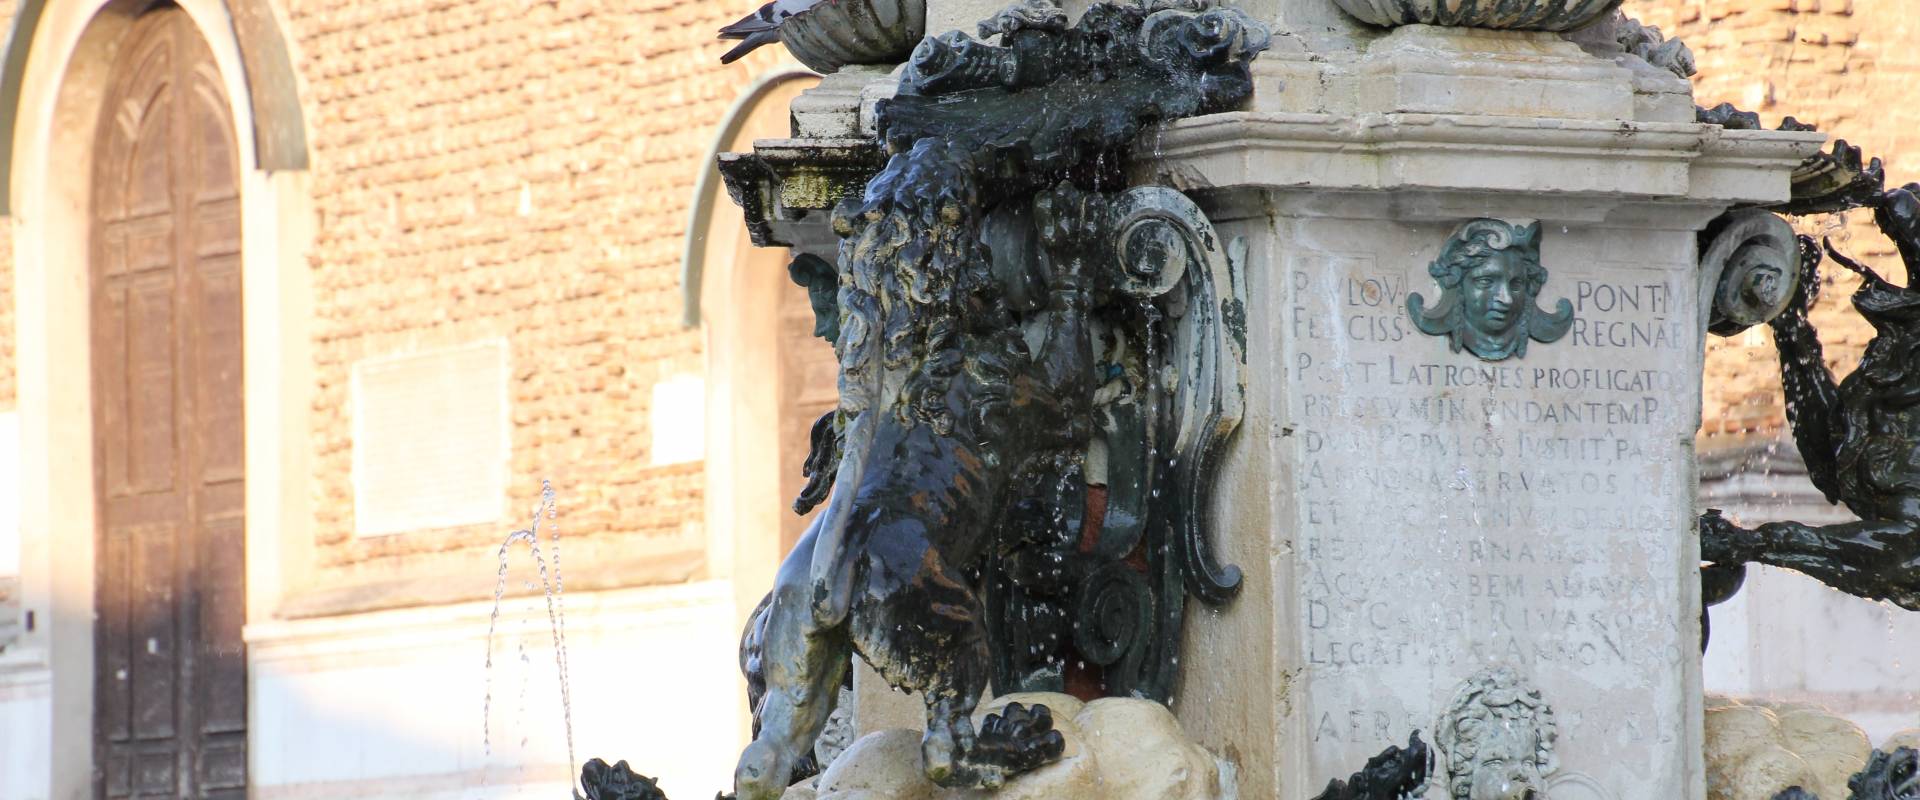 Faenza, fontana monumentale (06) foto di Gianni Careddu